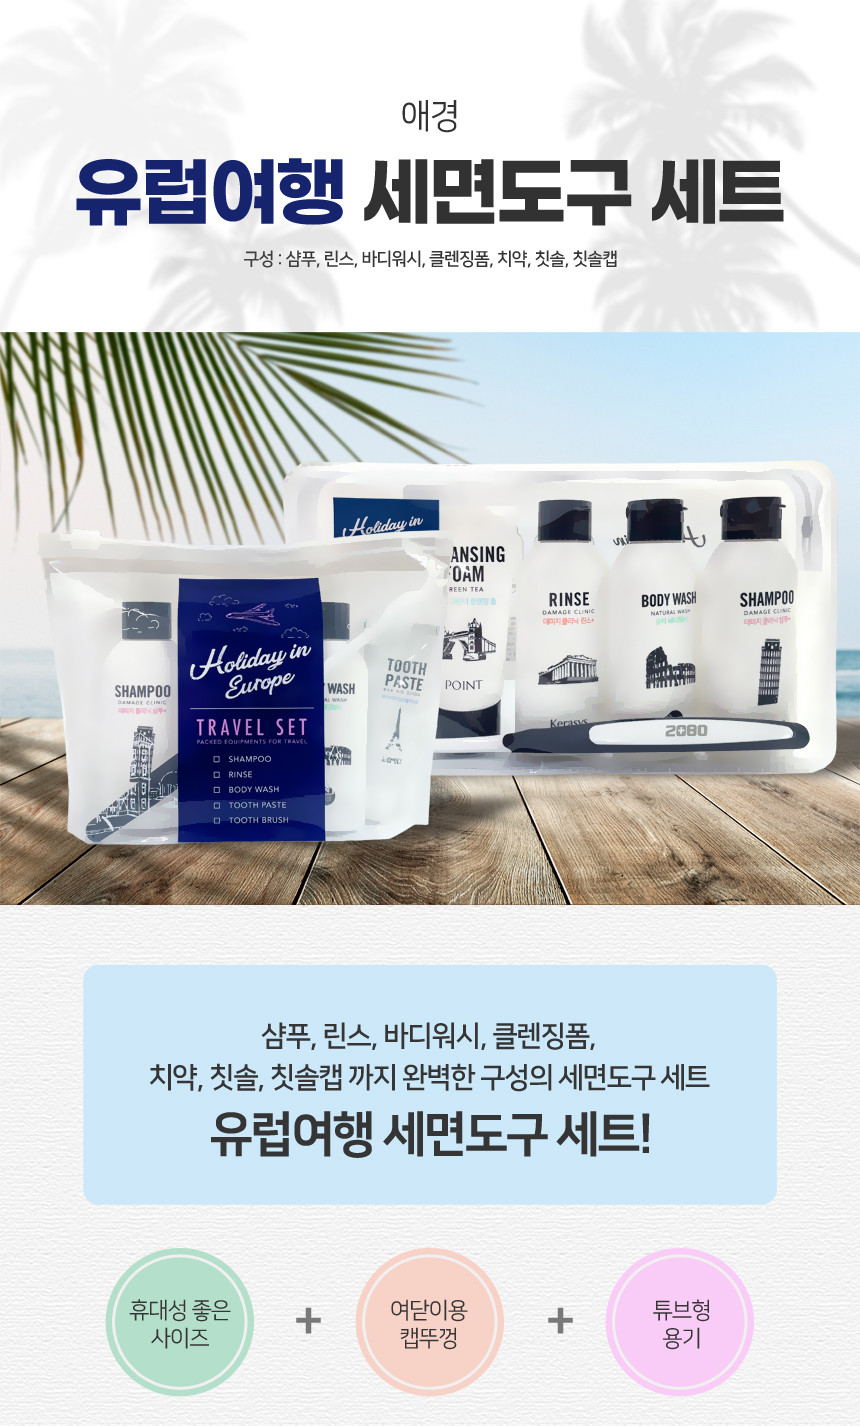 韓國食品-[Aekyung] 5件組旅行套裝 [歐洲假期] (洗頭水/護髮素/沐浴露/牙膏/牙刷)